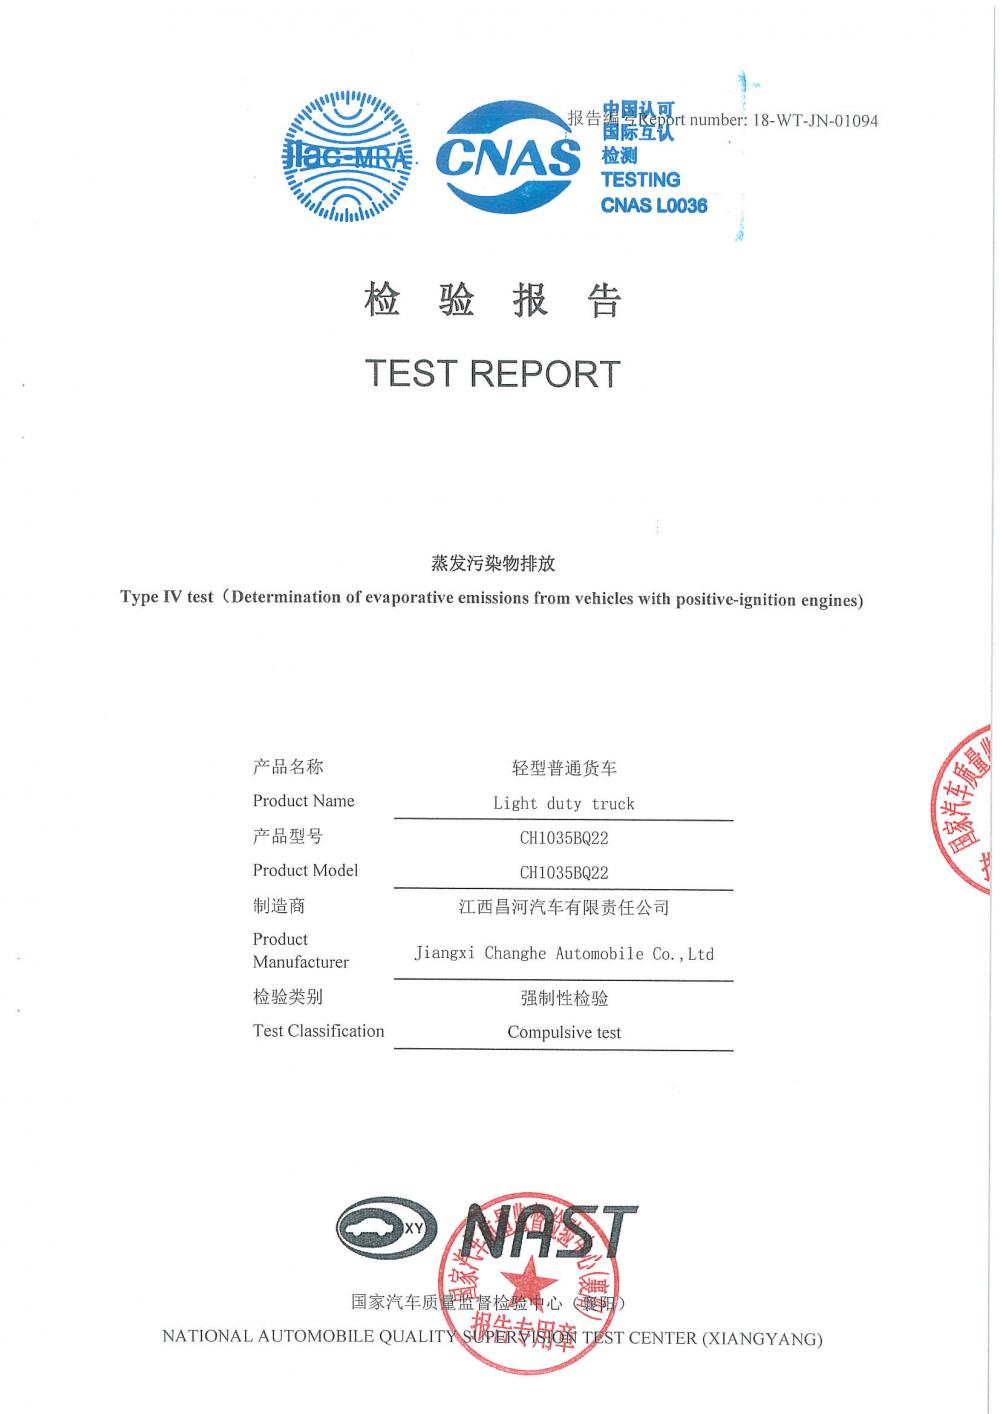 K21/K22 TRUCK EMISSION TEST REPORT